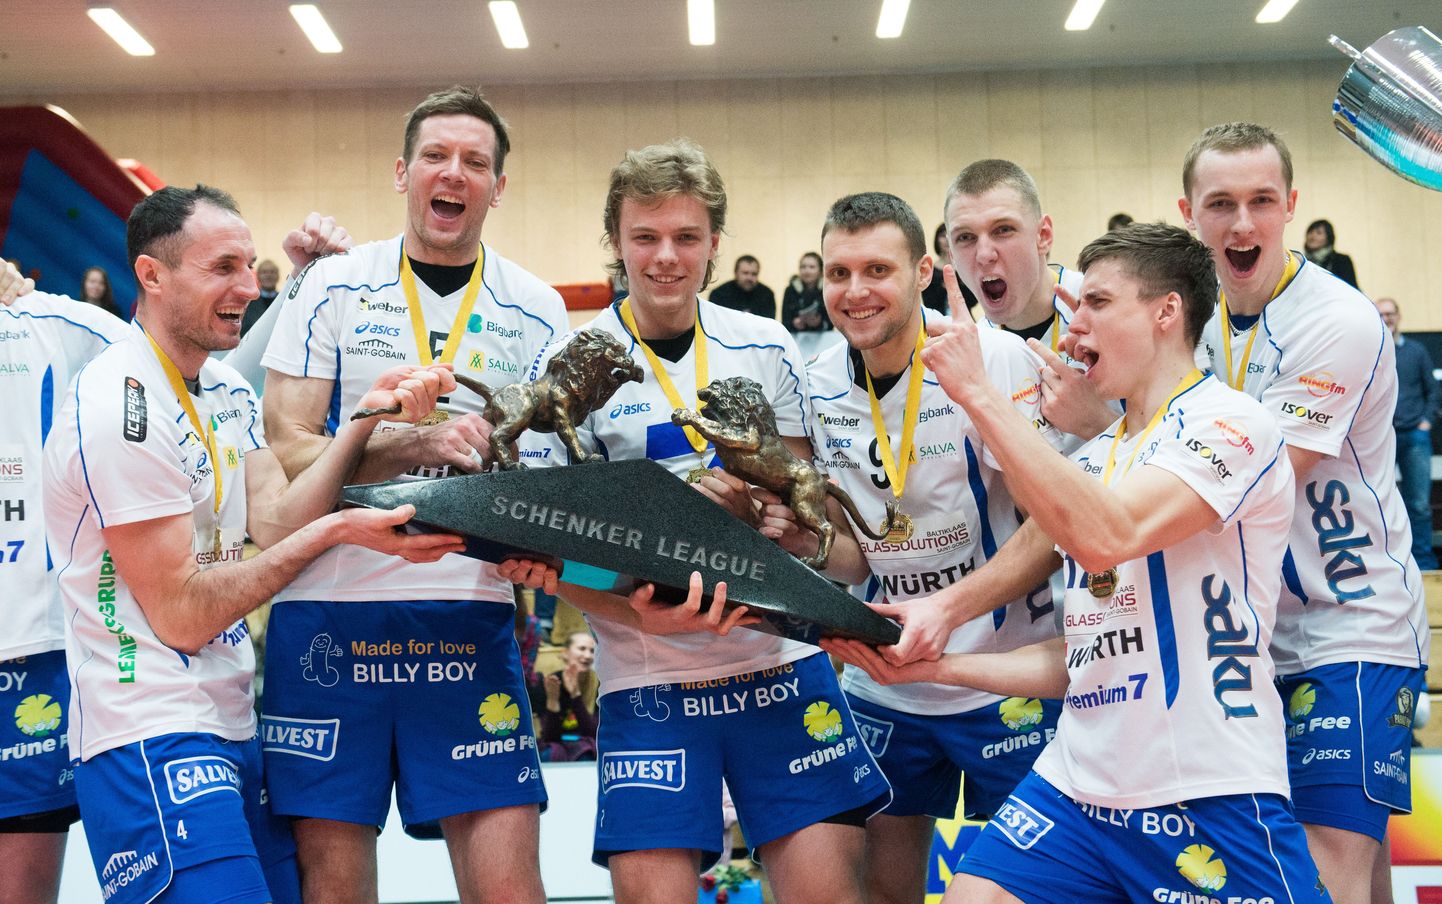 Eelmise aasta Schenker liiga finaal Tartu Bigbank vs Tallinna Selver. Võitis Tartu meeskond 3:2.